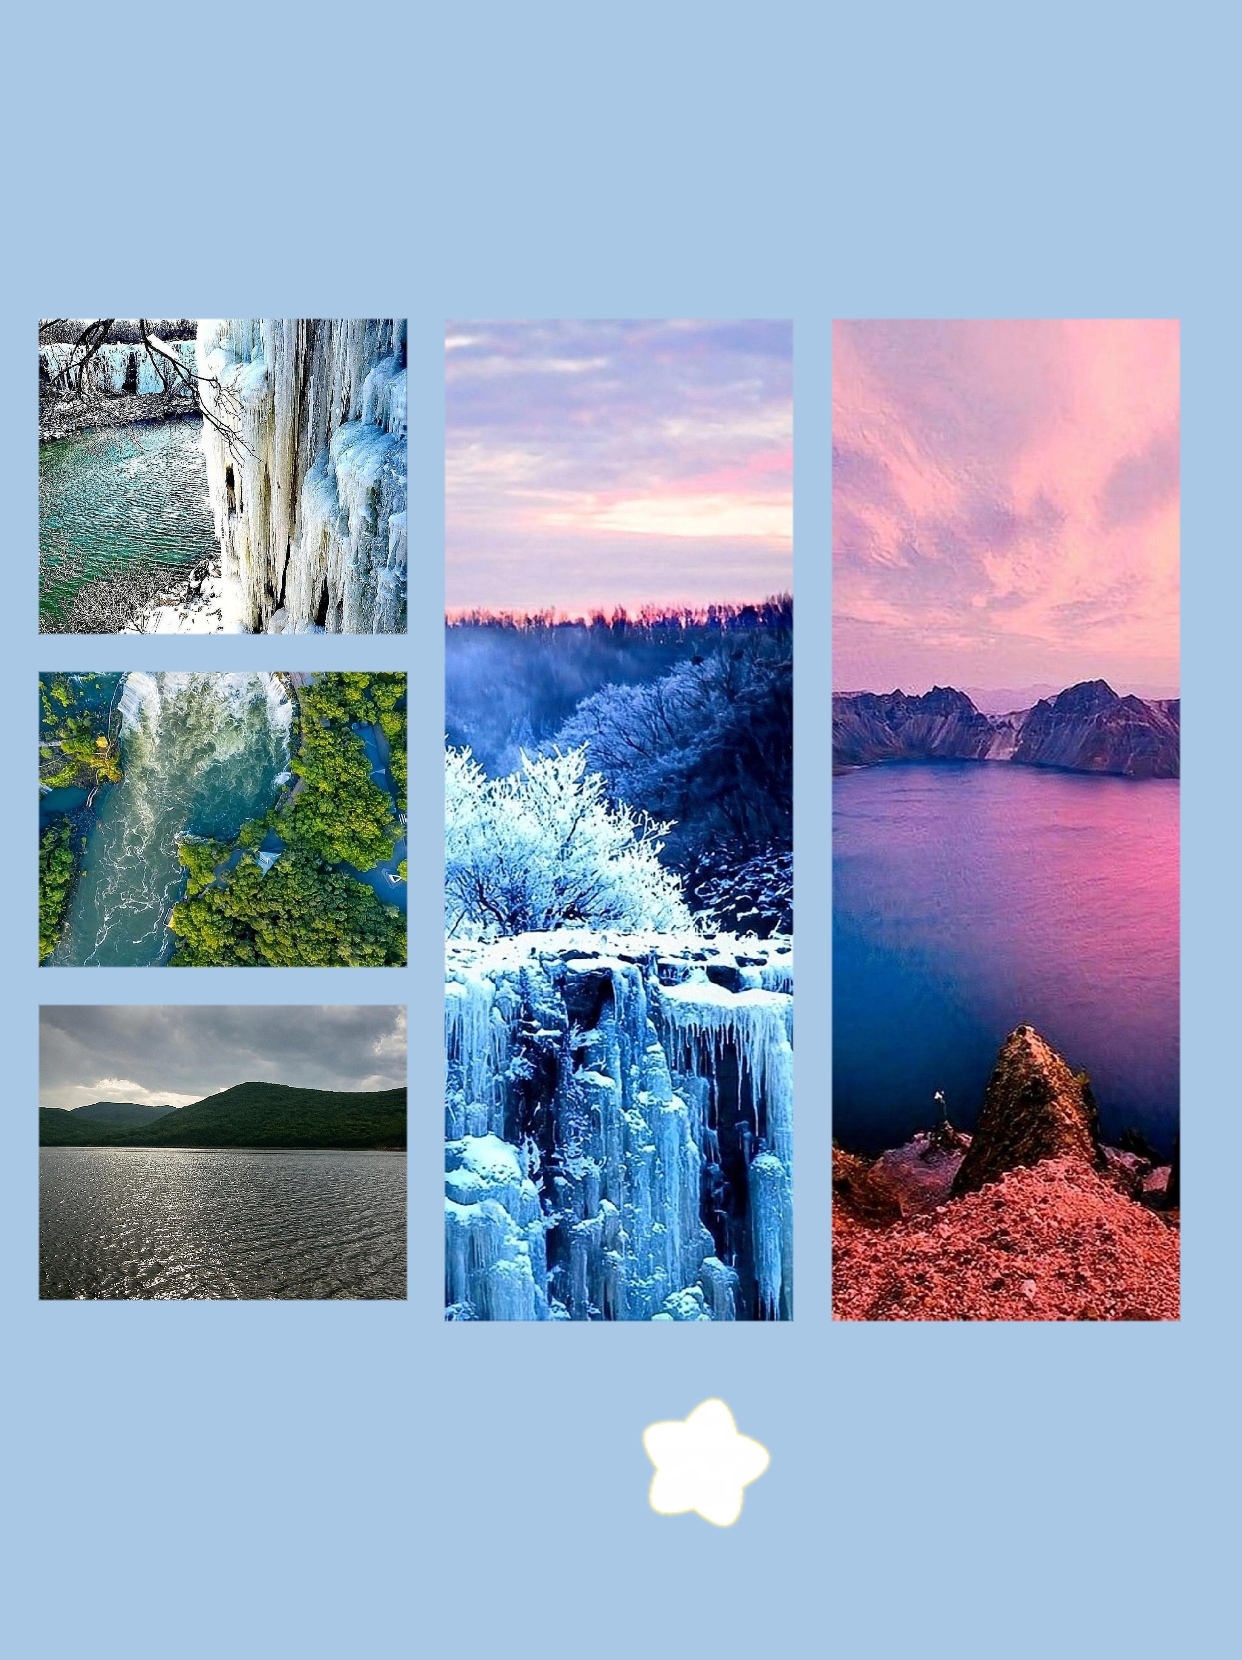 镜泊湖是中国著名的旅游、避暑和疗养胜地，位于黑龙江省牡丹江市宁安市，以其湖泊、山林为主要景观的自然风